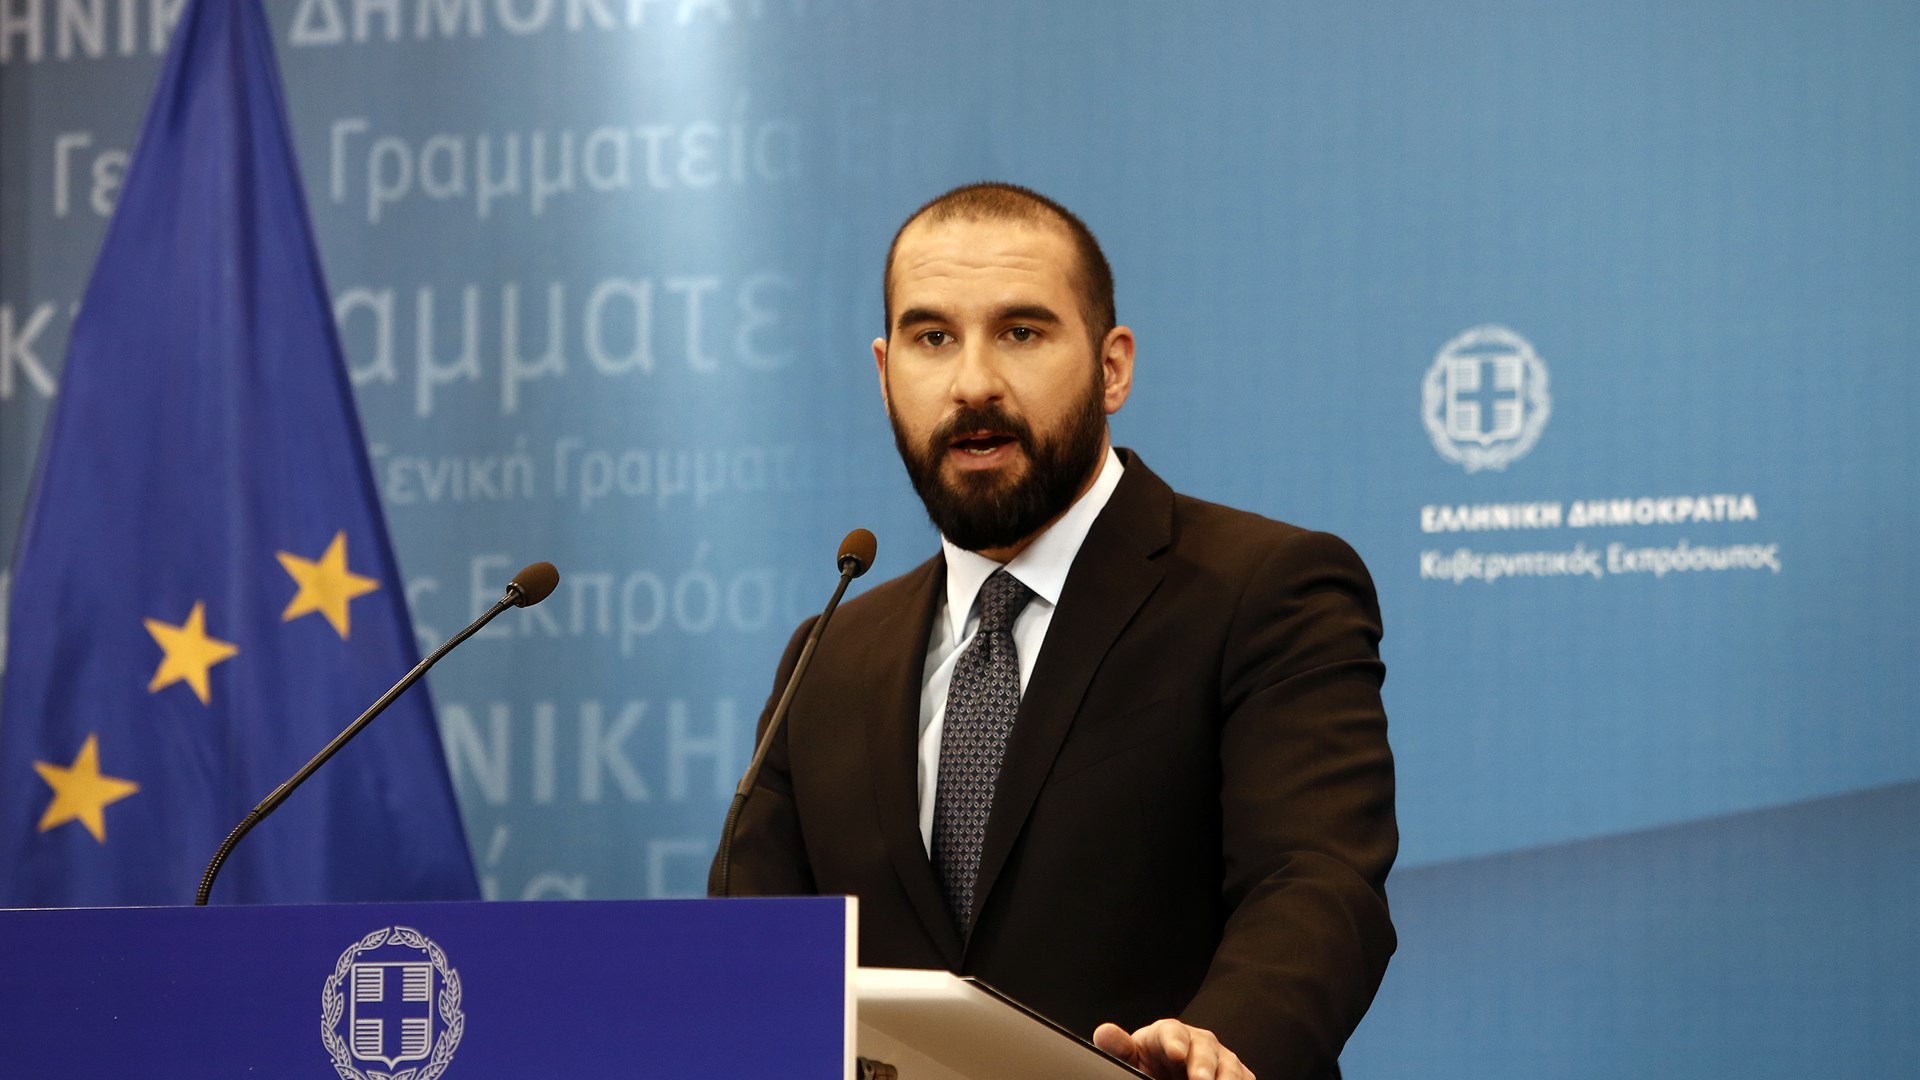 Τζανακόπουλος: Η αντιπολίτευση επέμεινε στη διαδικασιολογία, για να αποφύγει την ουσιαστική συζήτηση για τη Novartis